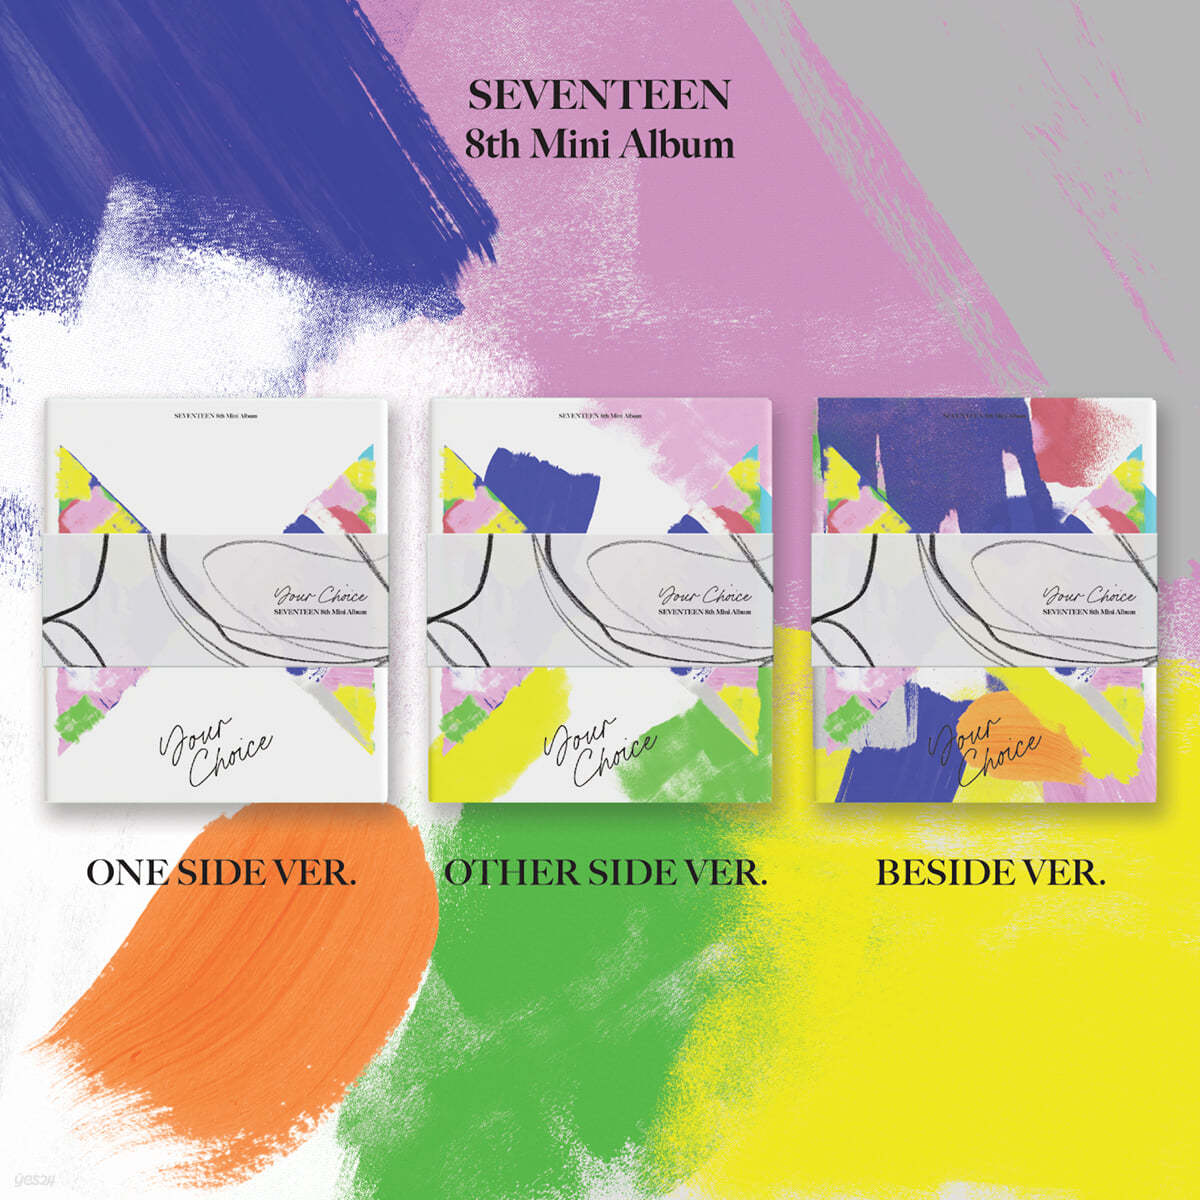 세븐틴 (Seventeen) - 미니앨범 8집 : Your Choice [ONE SIDE/OTHER SIDE/BESIDE ver. 중 랜덤발송]